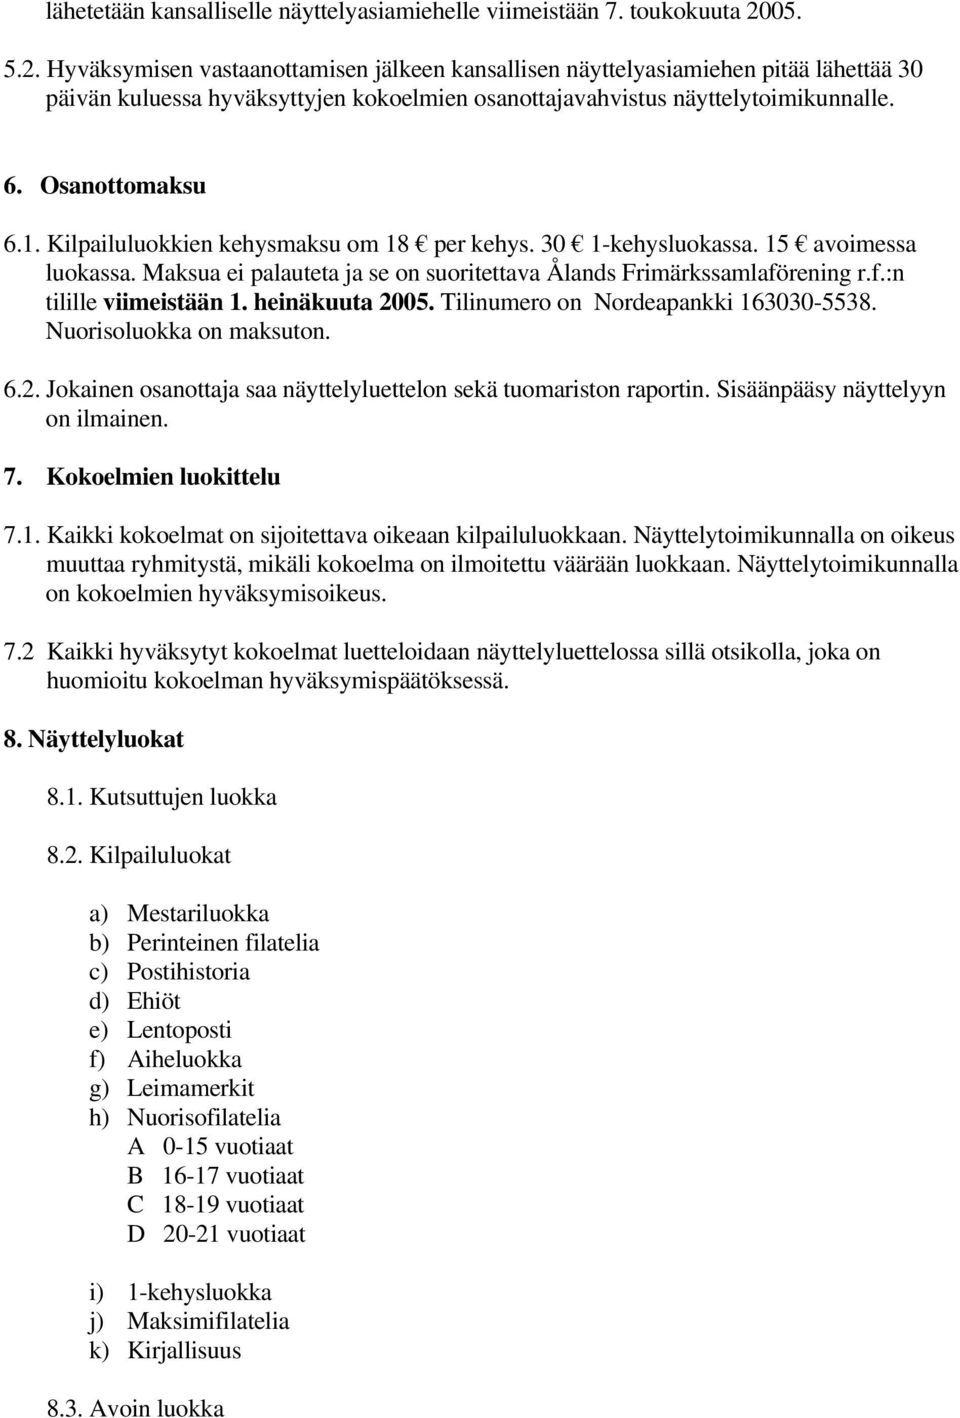 1. Kilpailuluokkien kehysmaksu om 18 per kehys. 30 1-kehysluokassa. 15 avoimessa luokassa. Maksua ei palauteta ja se on suoritettava Ålands Frimärkssamlaförening r.f.:n tilille viimeistään 1.